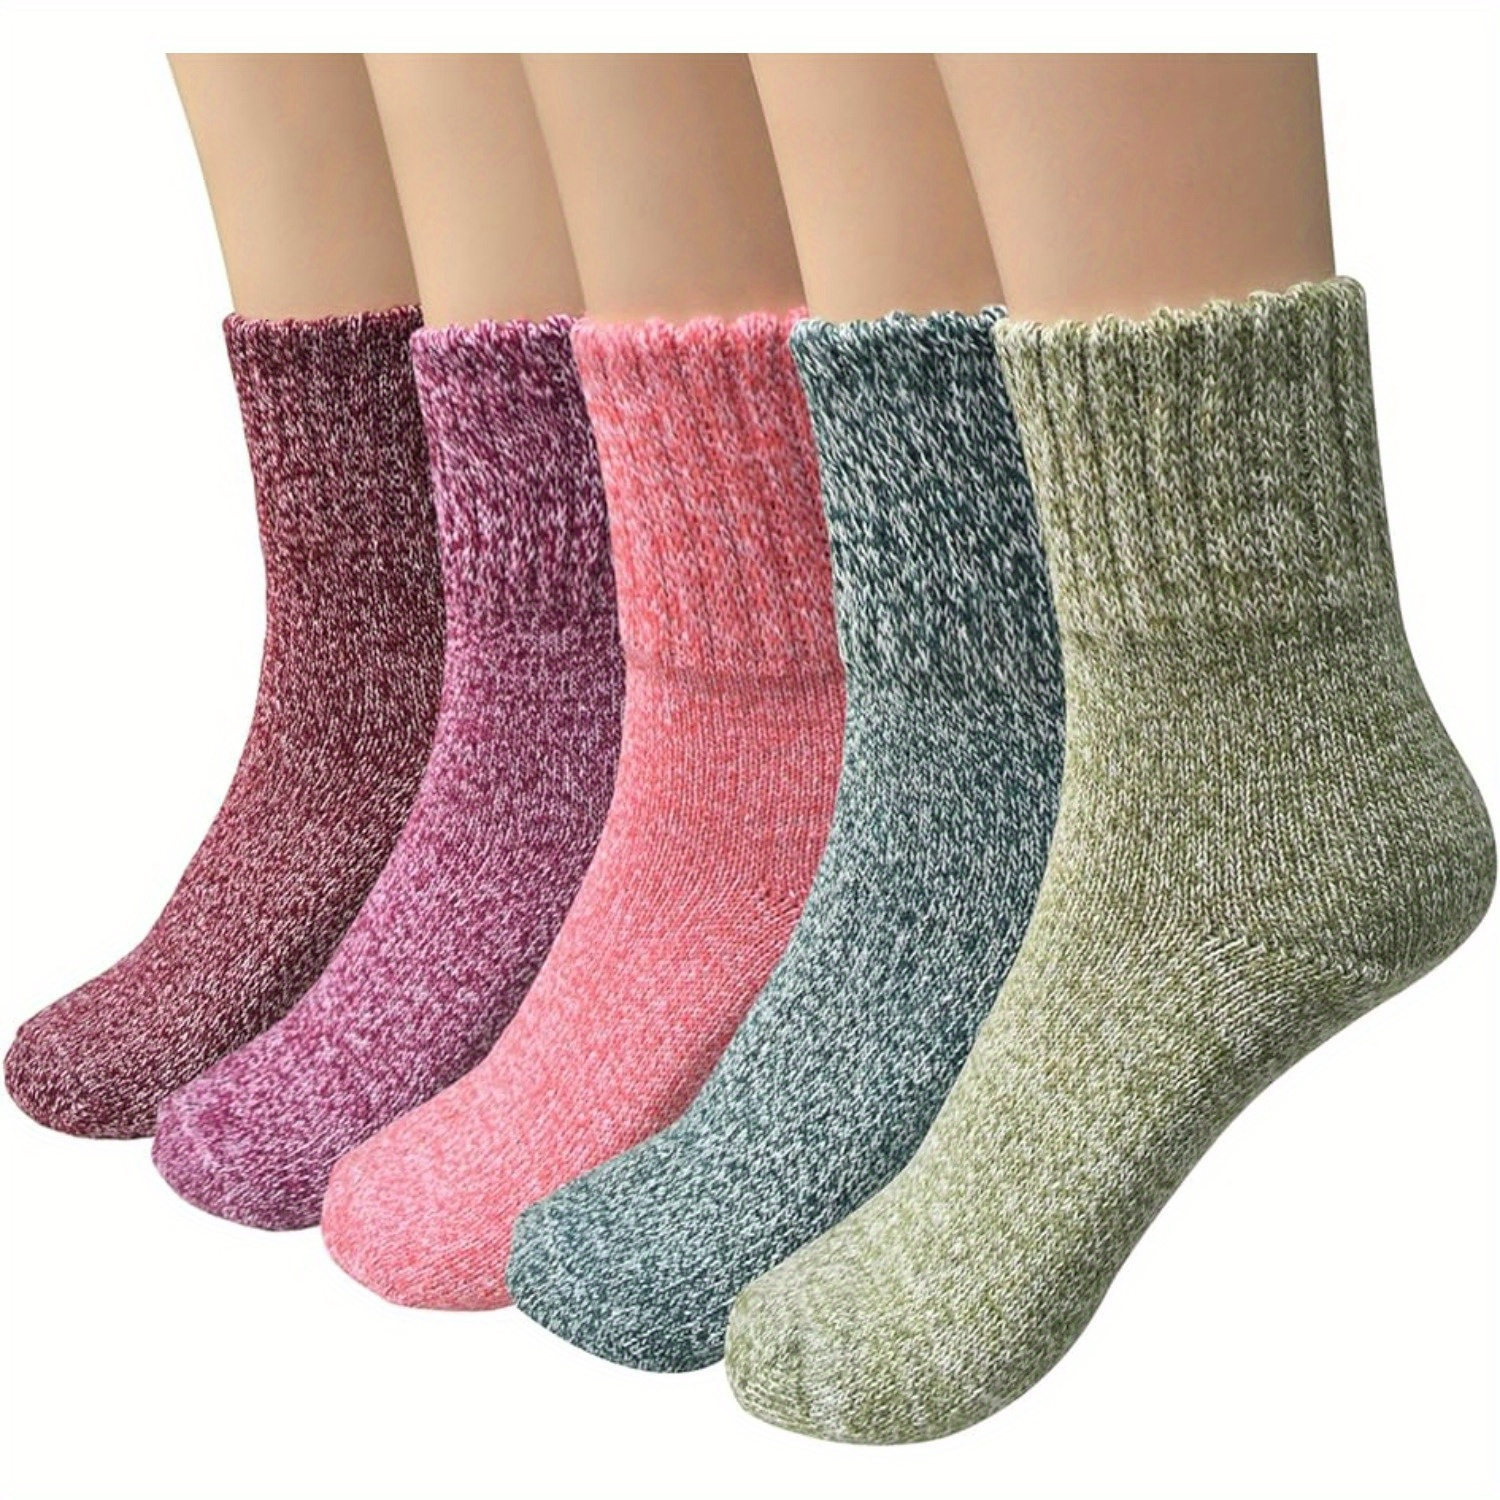 1 3 5 Pairs Winter Warm Wool Socks Thick Cozy Knit Crew Socks